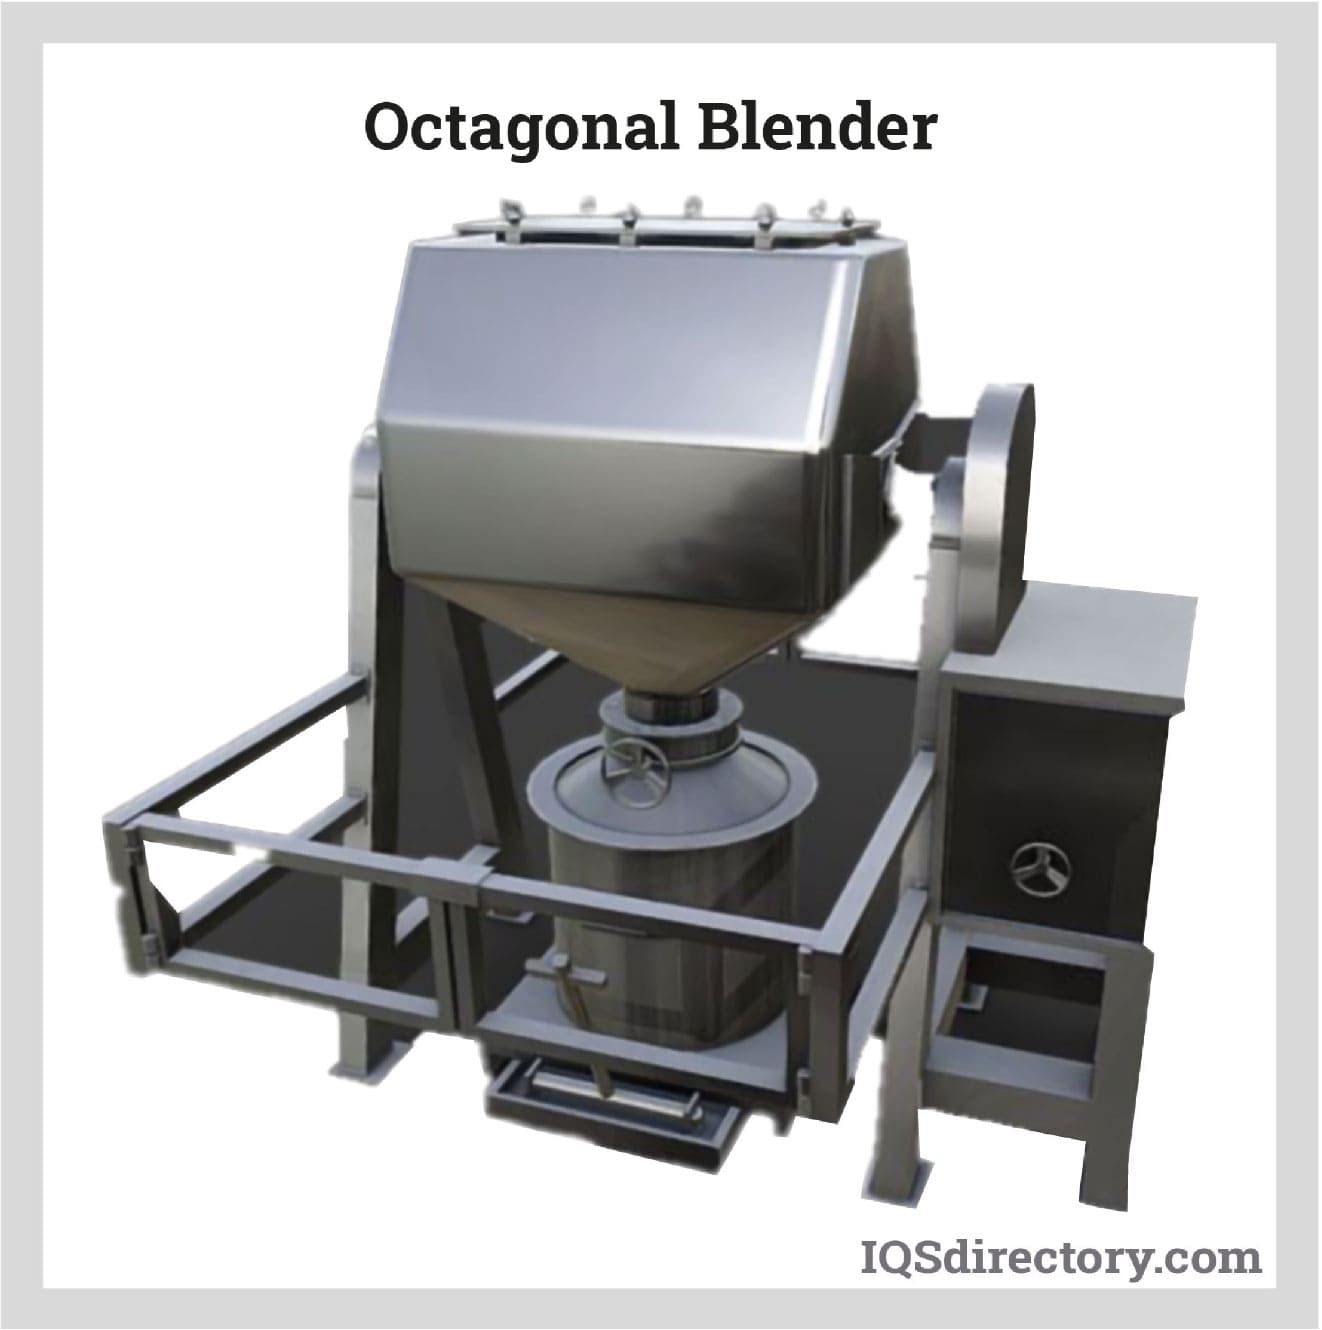 Octagonal Blender